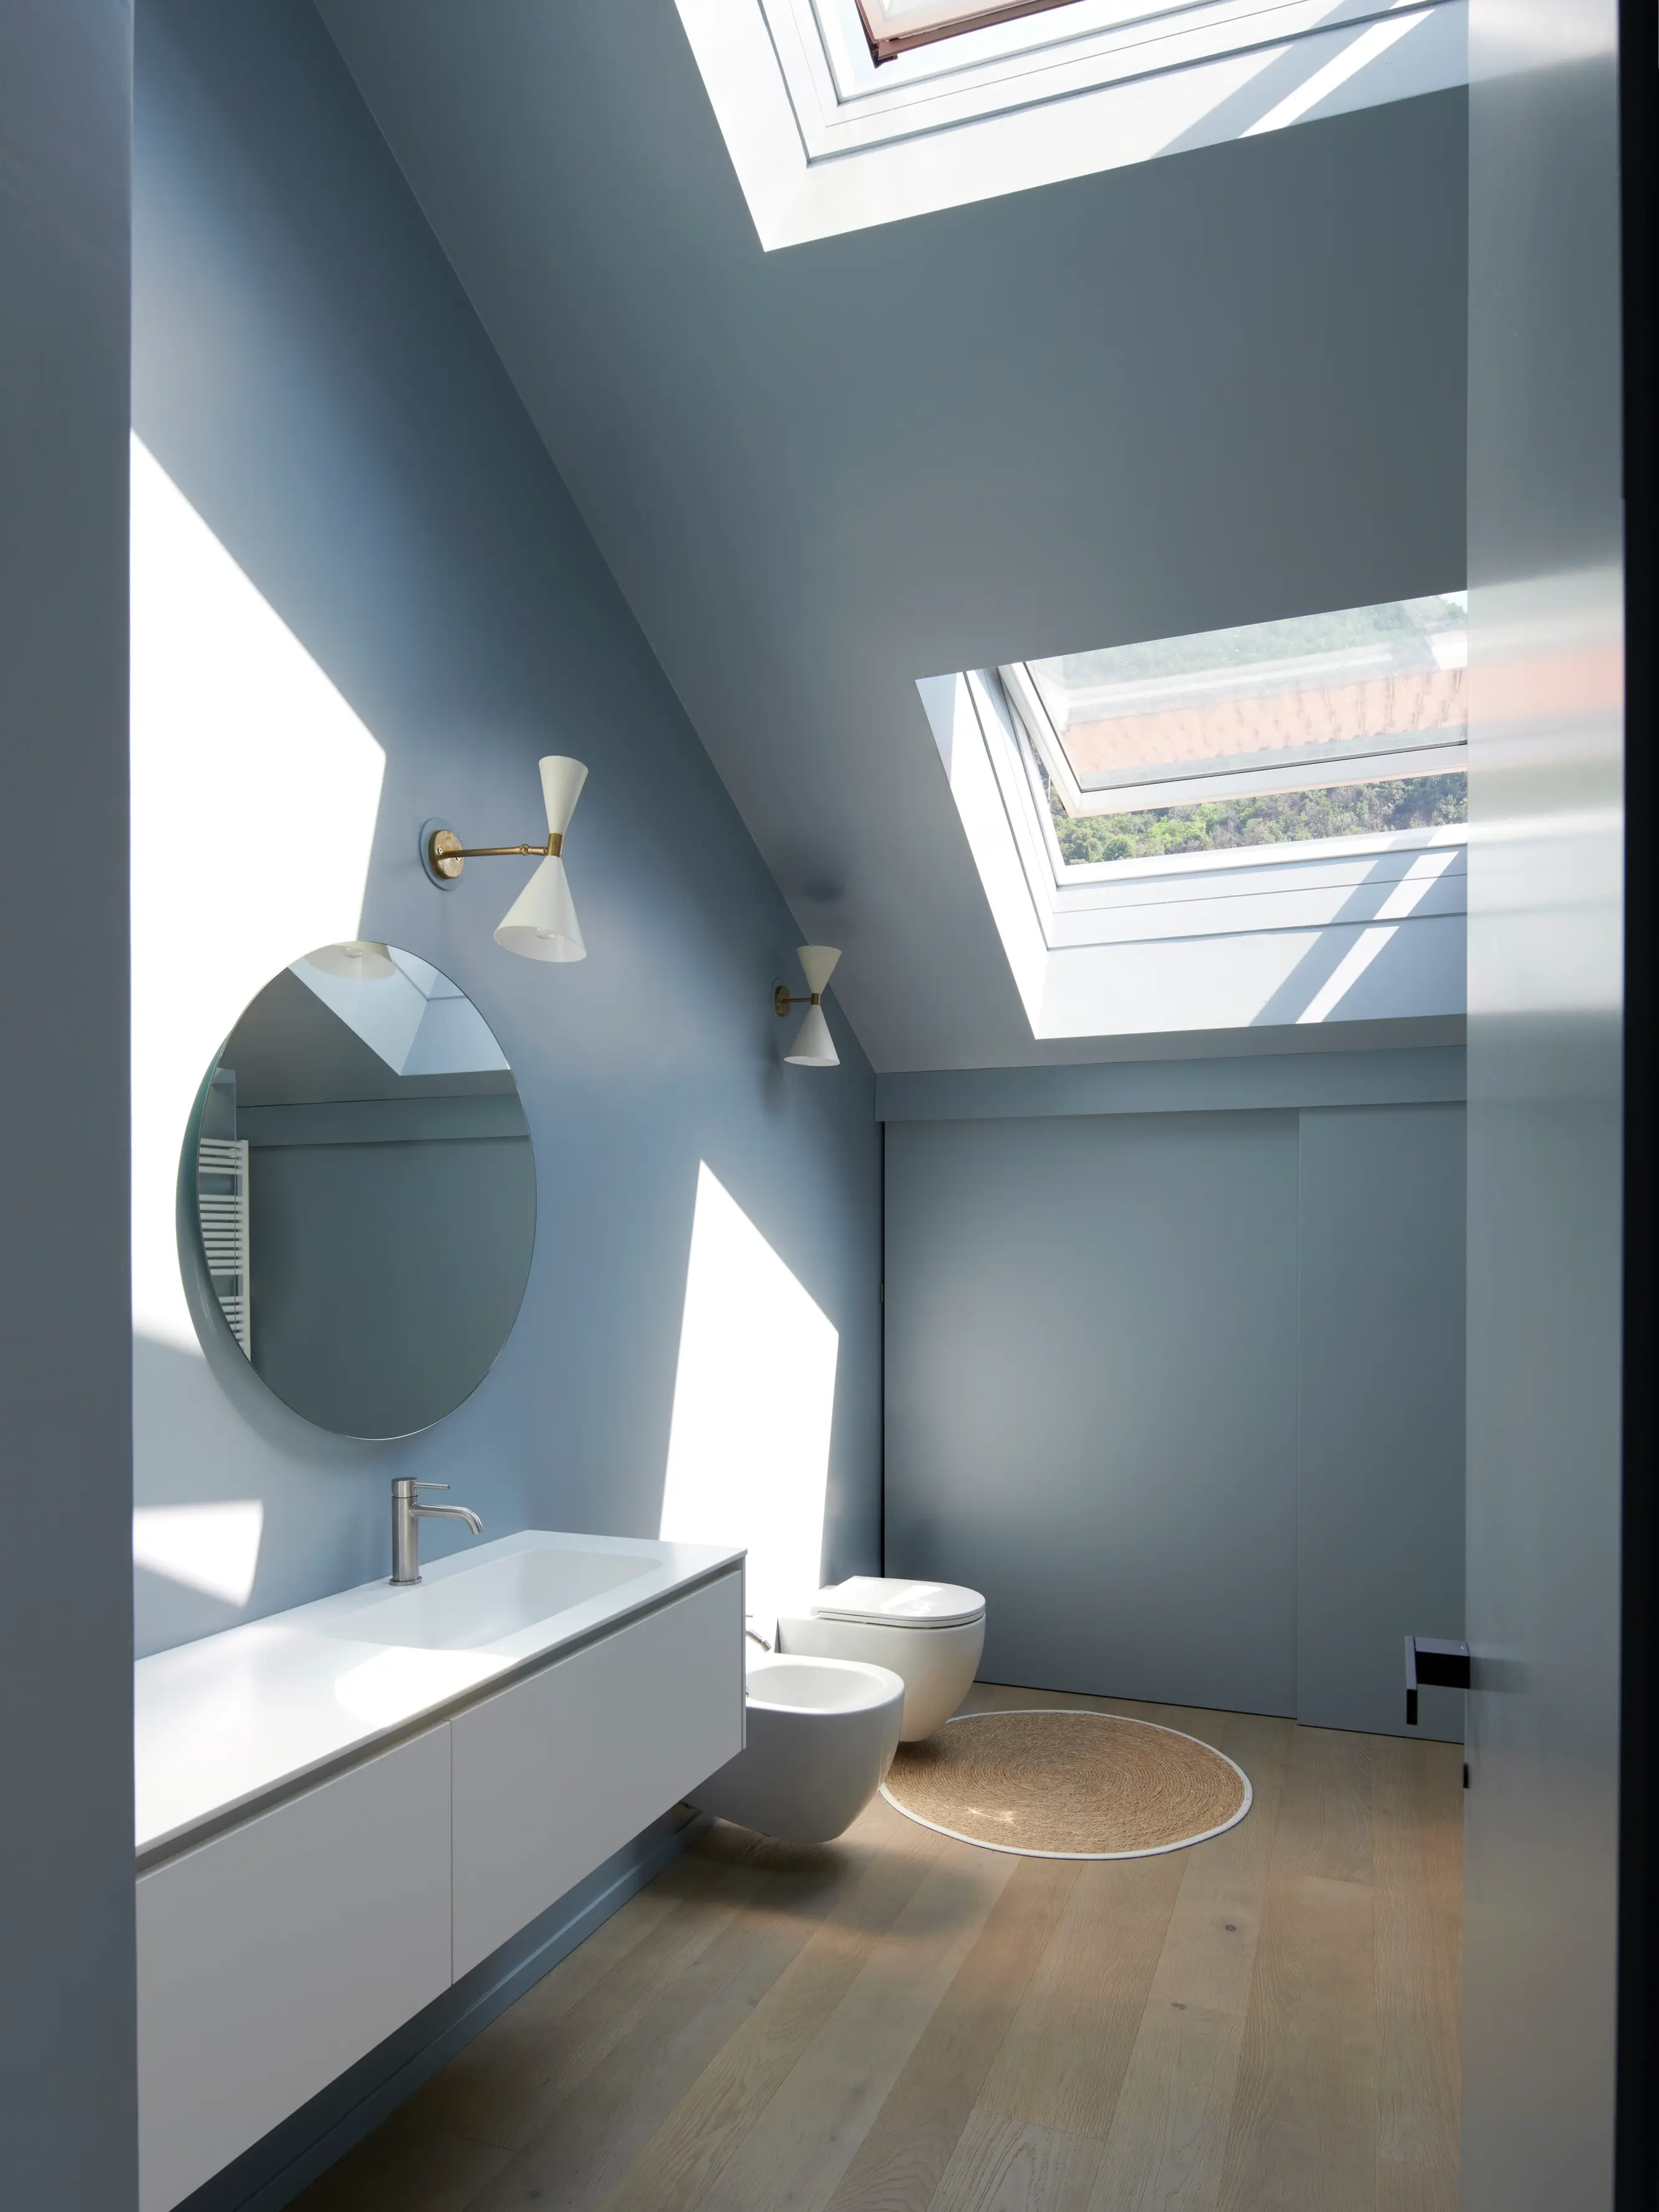 Une salle de bain minimaliste avec des murs gris-bleu, un plancher en bois clair, et des sanitaires blancs. Une fenêtre de toit projette la lumière naturelle sur l'espace.